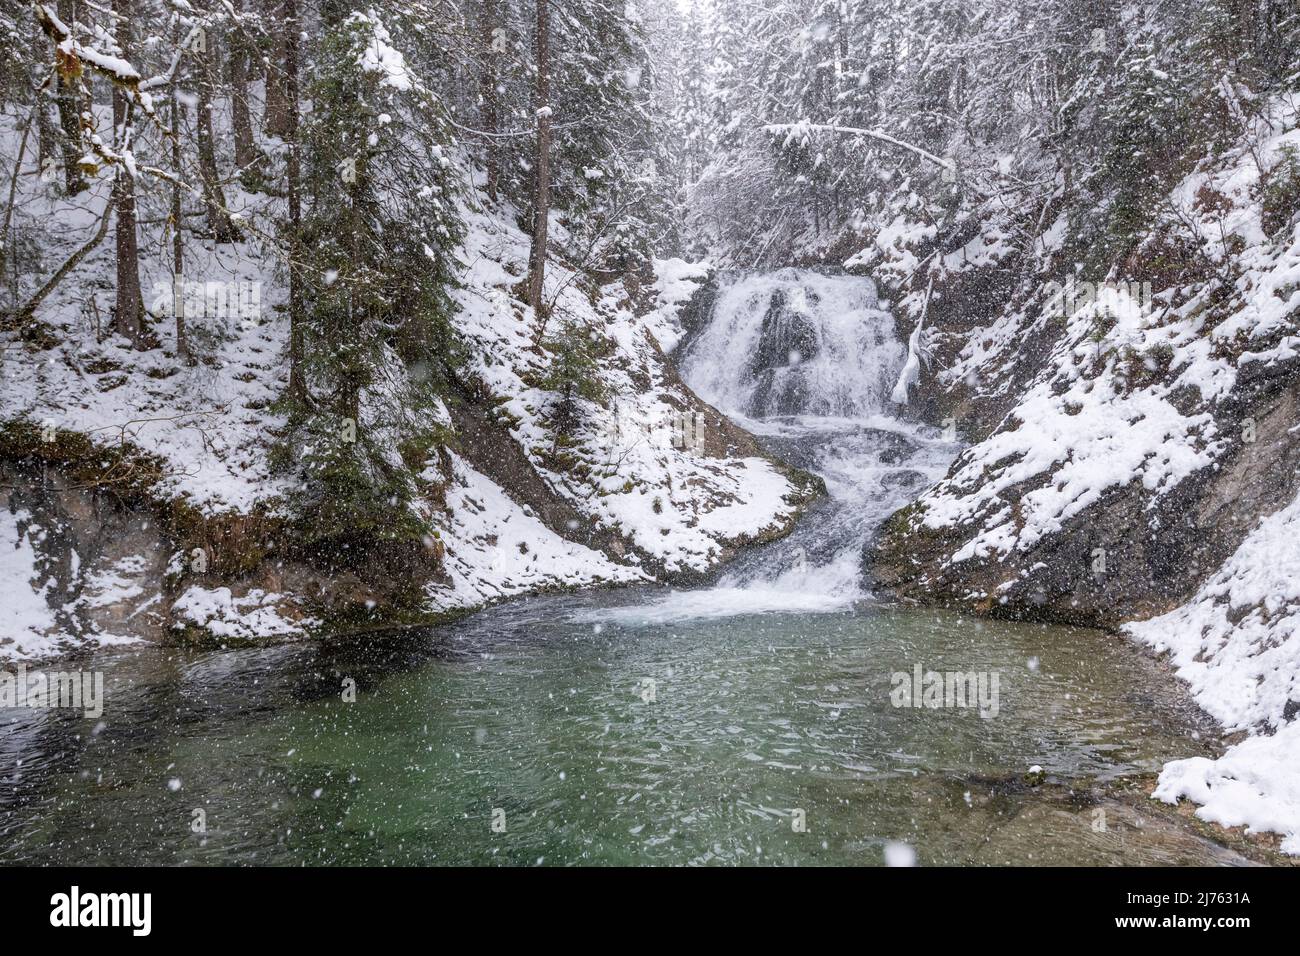 La Sachenfall sur l'Obernach entre Wallgau et Walchensee dans les Alpes bavaroises, lors de fortes chutes de neige en hiver. Son eau claire ajoute un fort accent de couleur. Banque D'Images